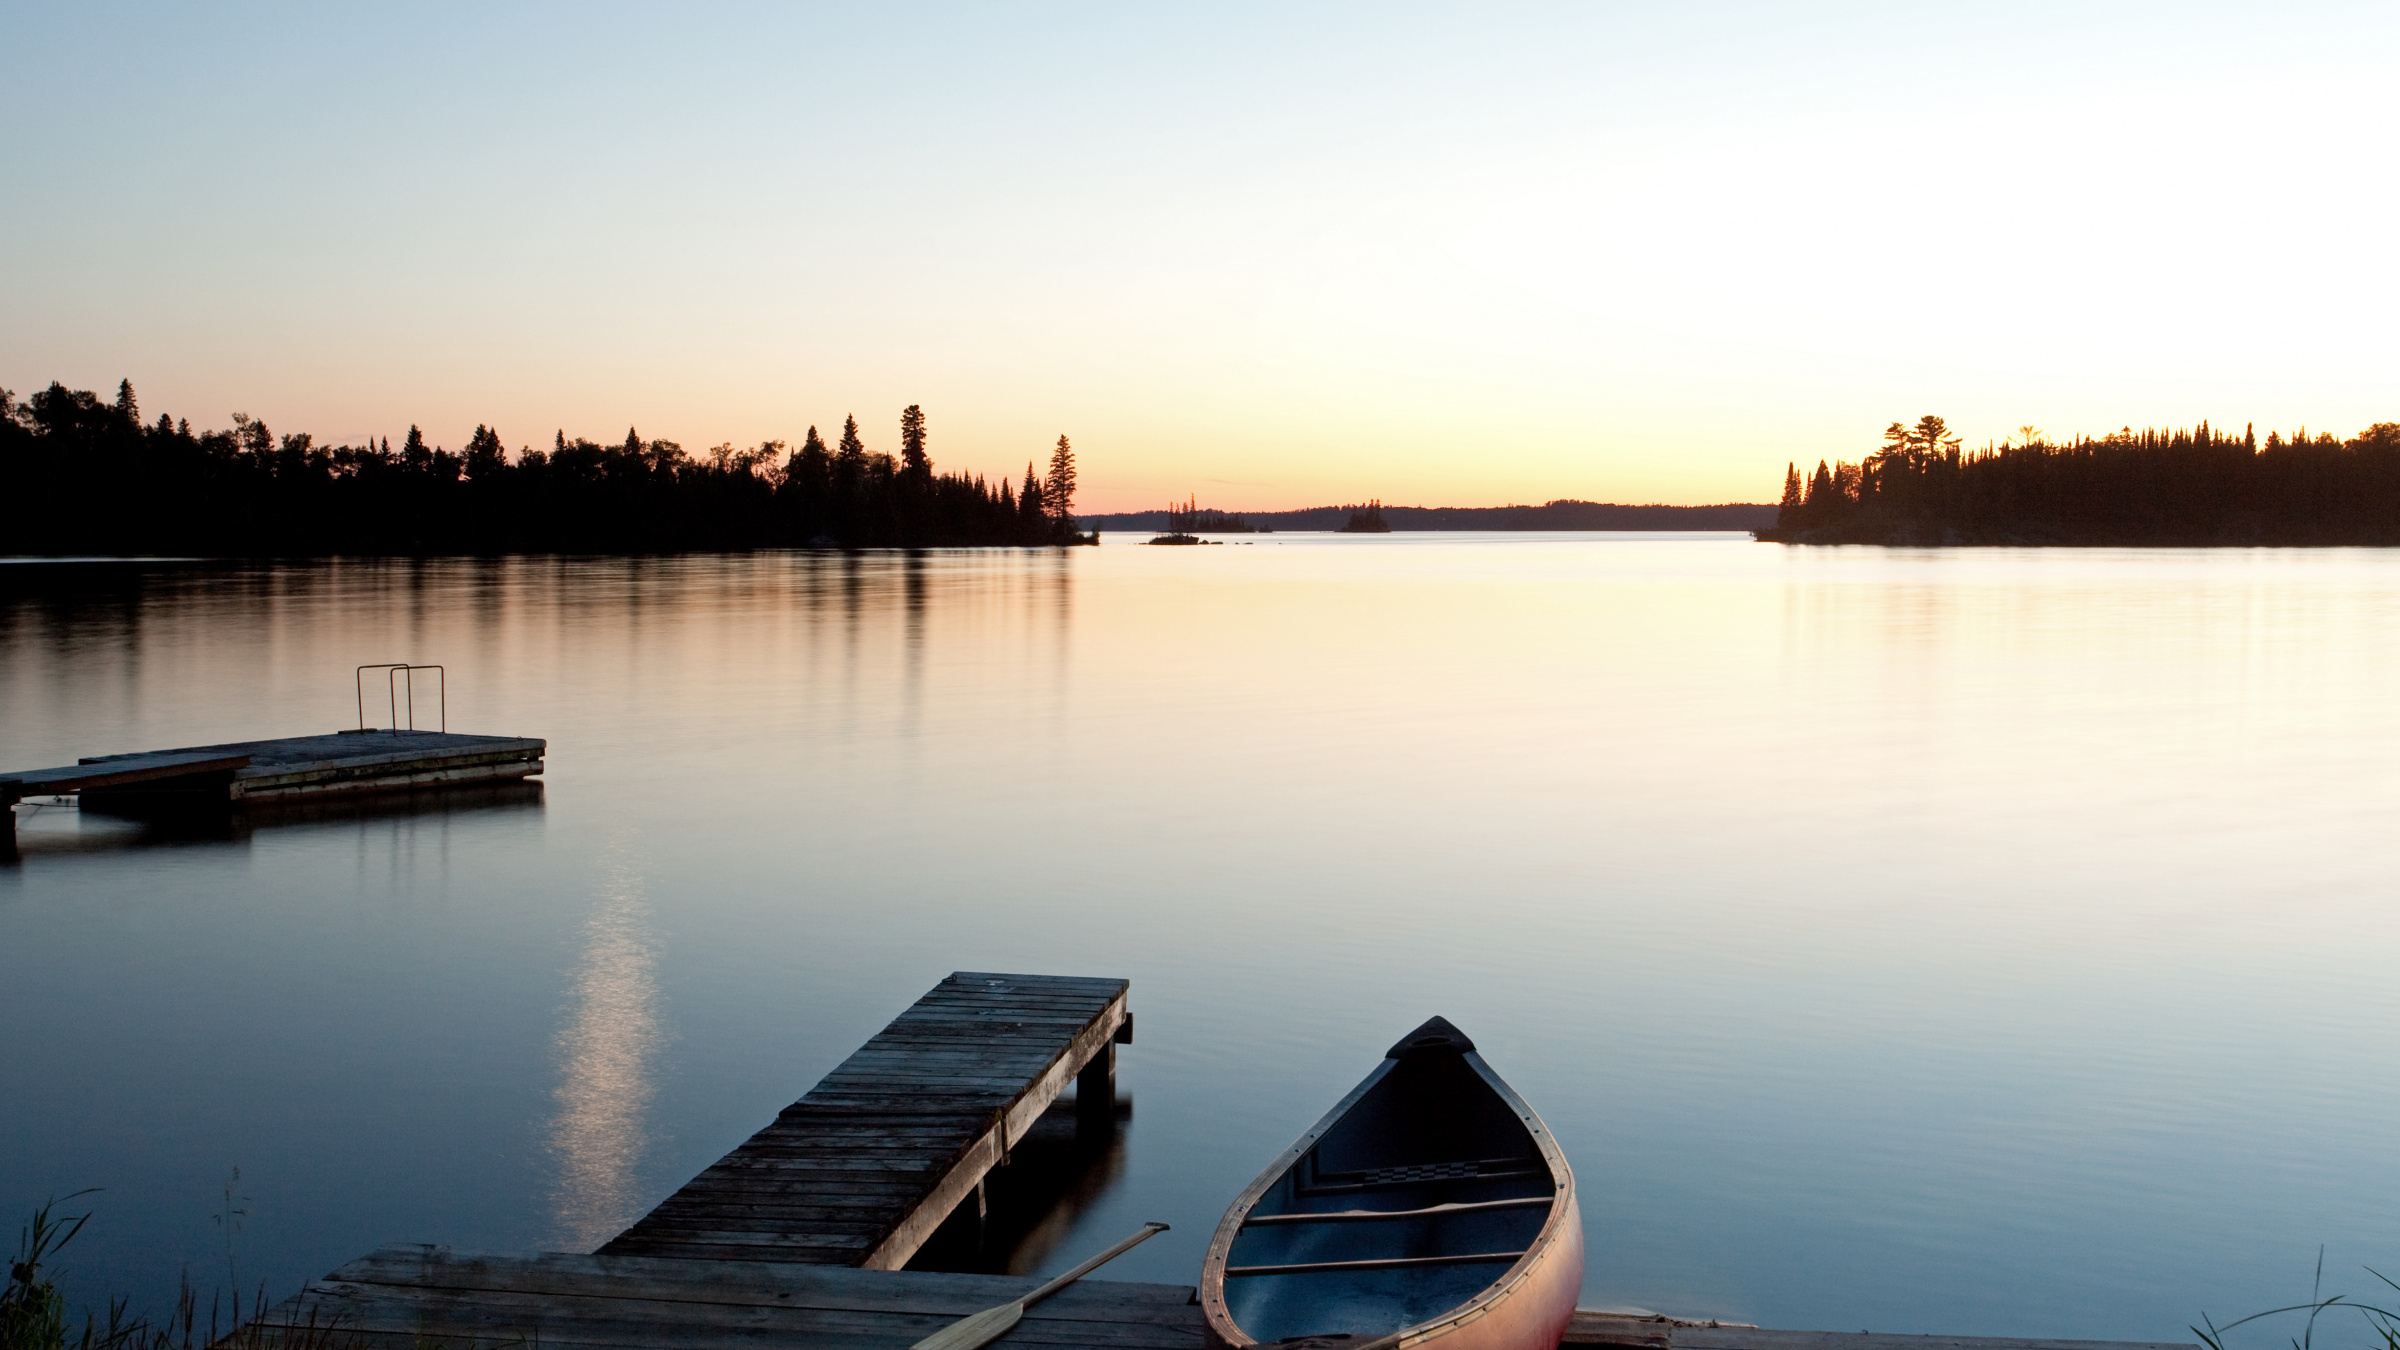 Canoe on a dock at dusk